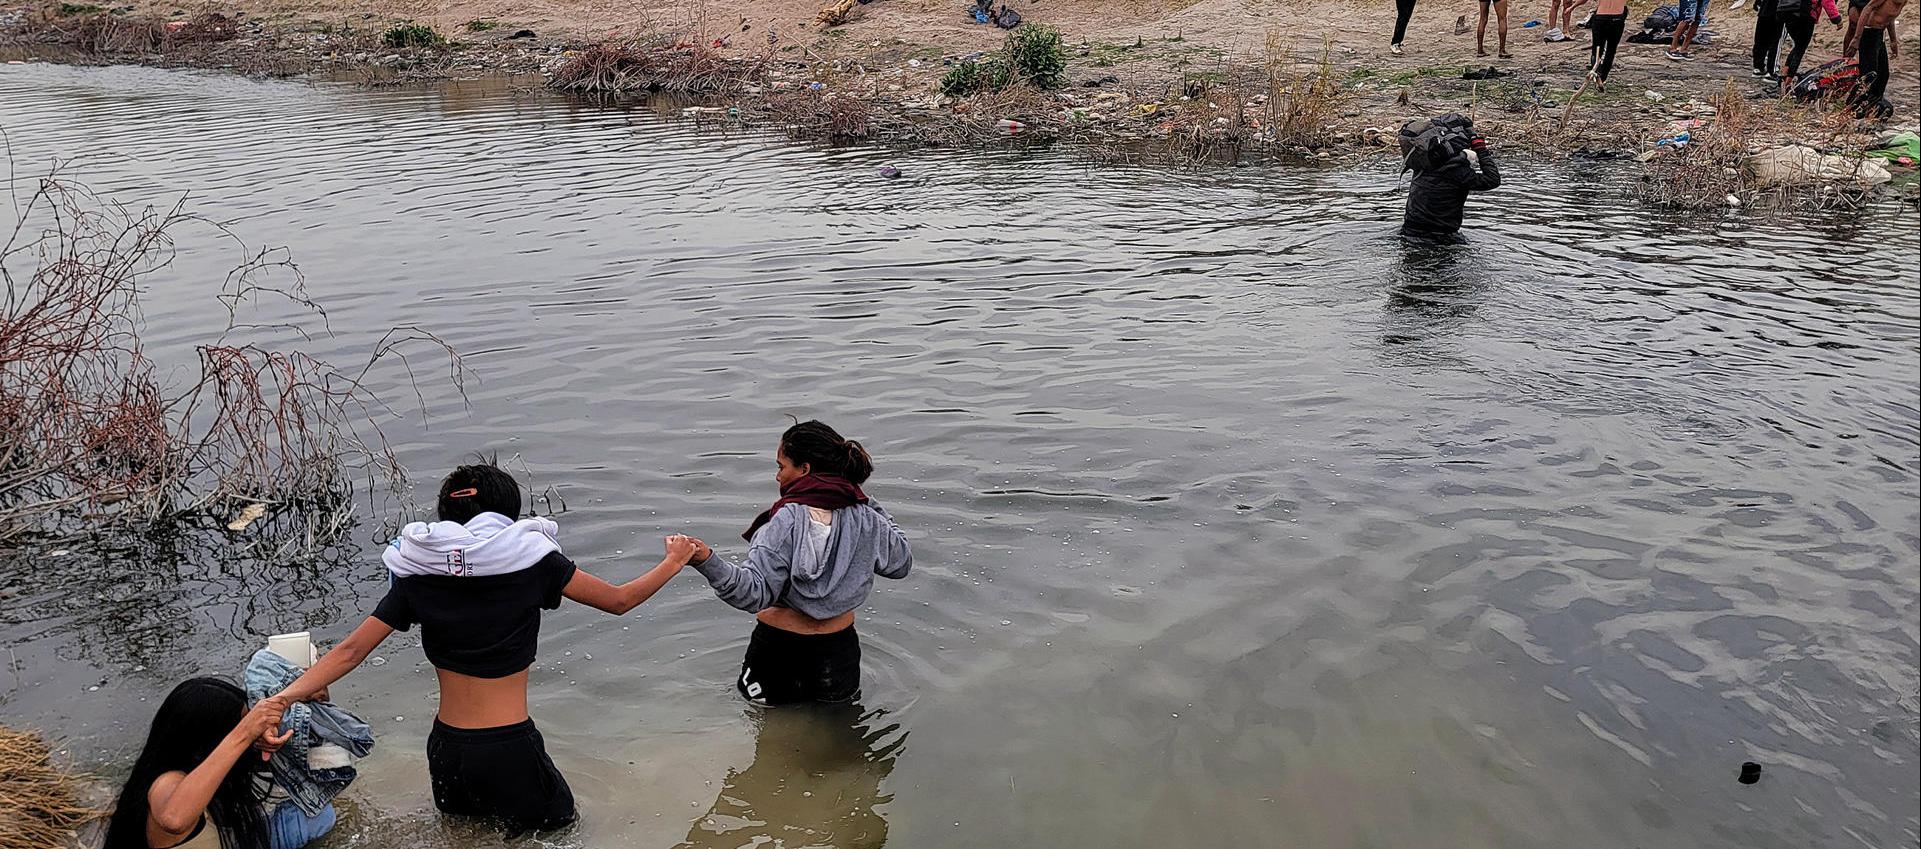 Migrantes se preparan para cruzar el Río Bravo, en la frontera que divide a México de los Estados Unidos, en un punto de Texas.